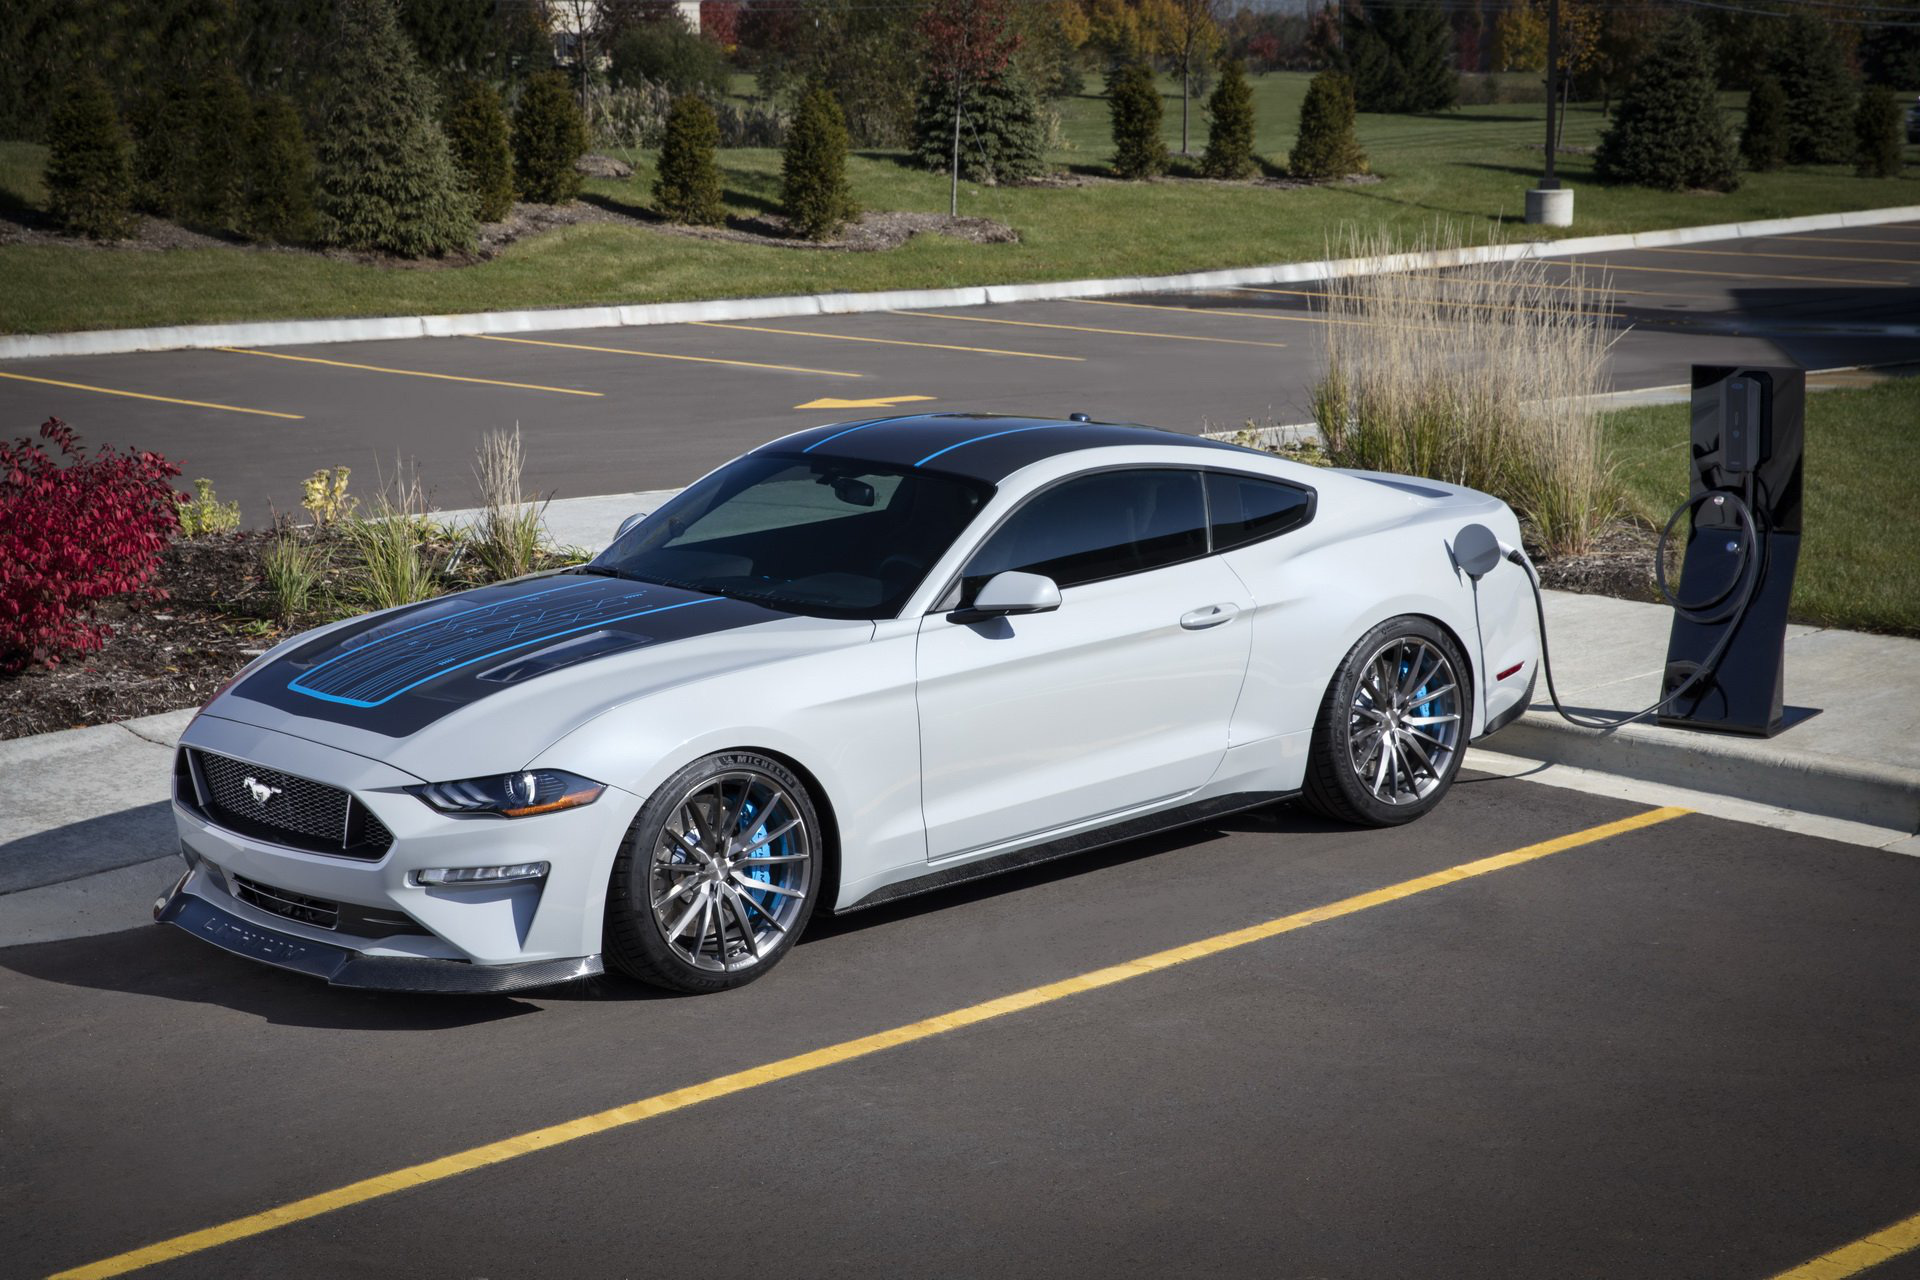 Xe thể thao bán chạy nhất thế giới Ford Mustang sắp có hàng loạt thay đổi quan trọng này - Ảnh 1.